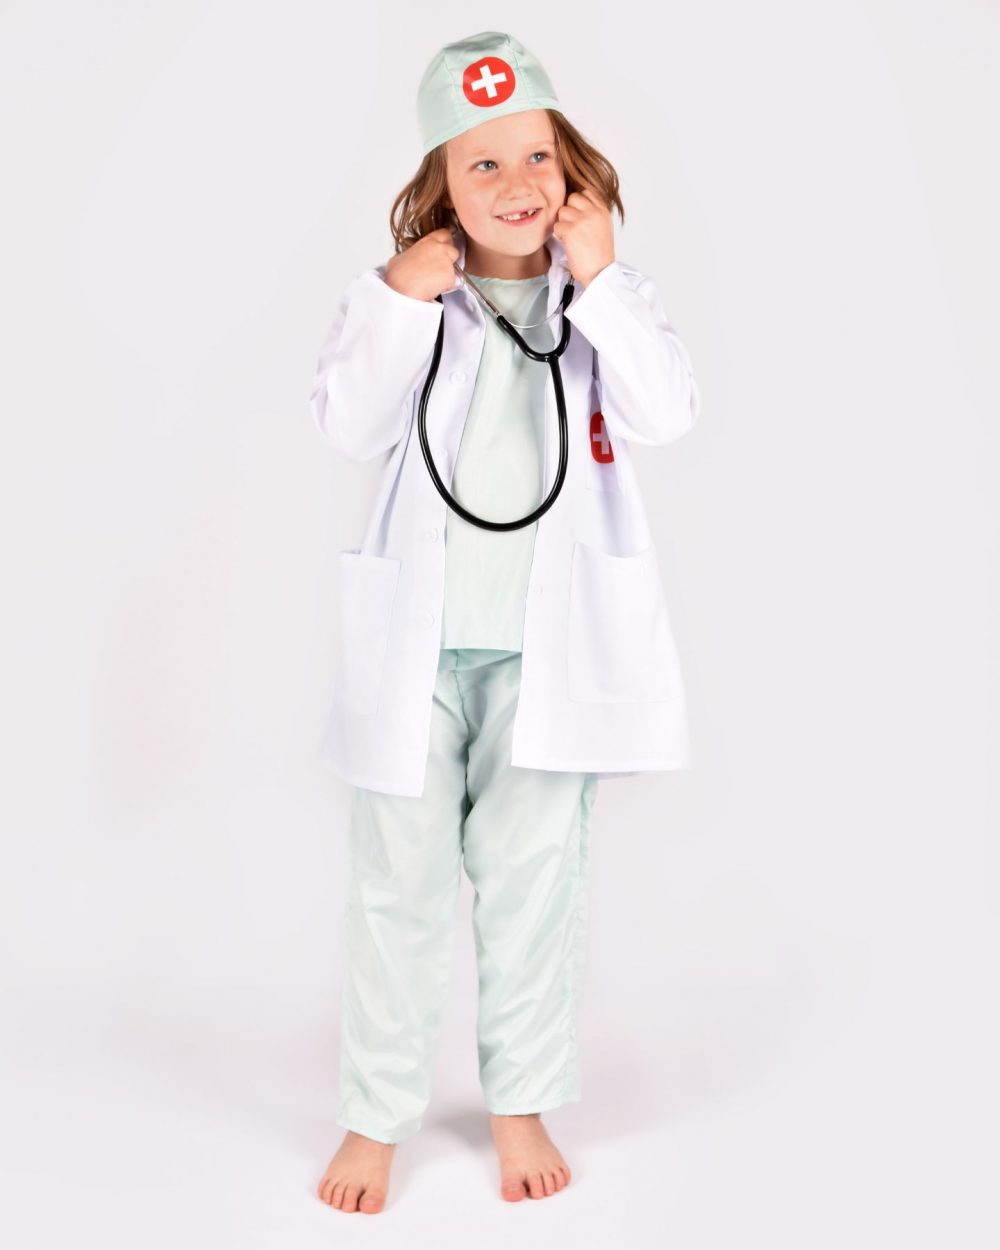 Flicka som bär en grönvit doktorsdräkt och ett svart stetoskop.